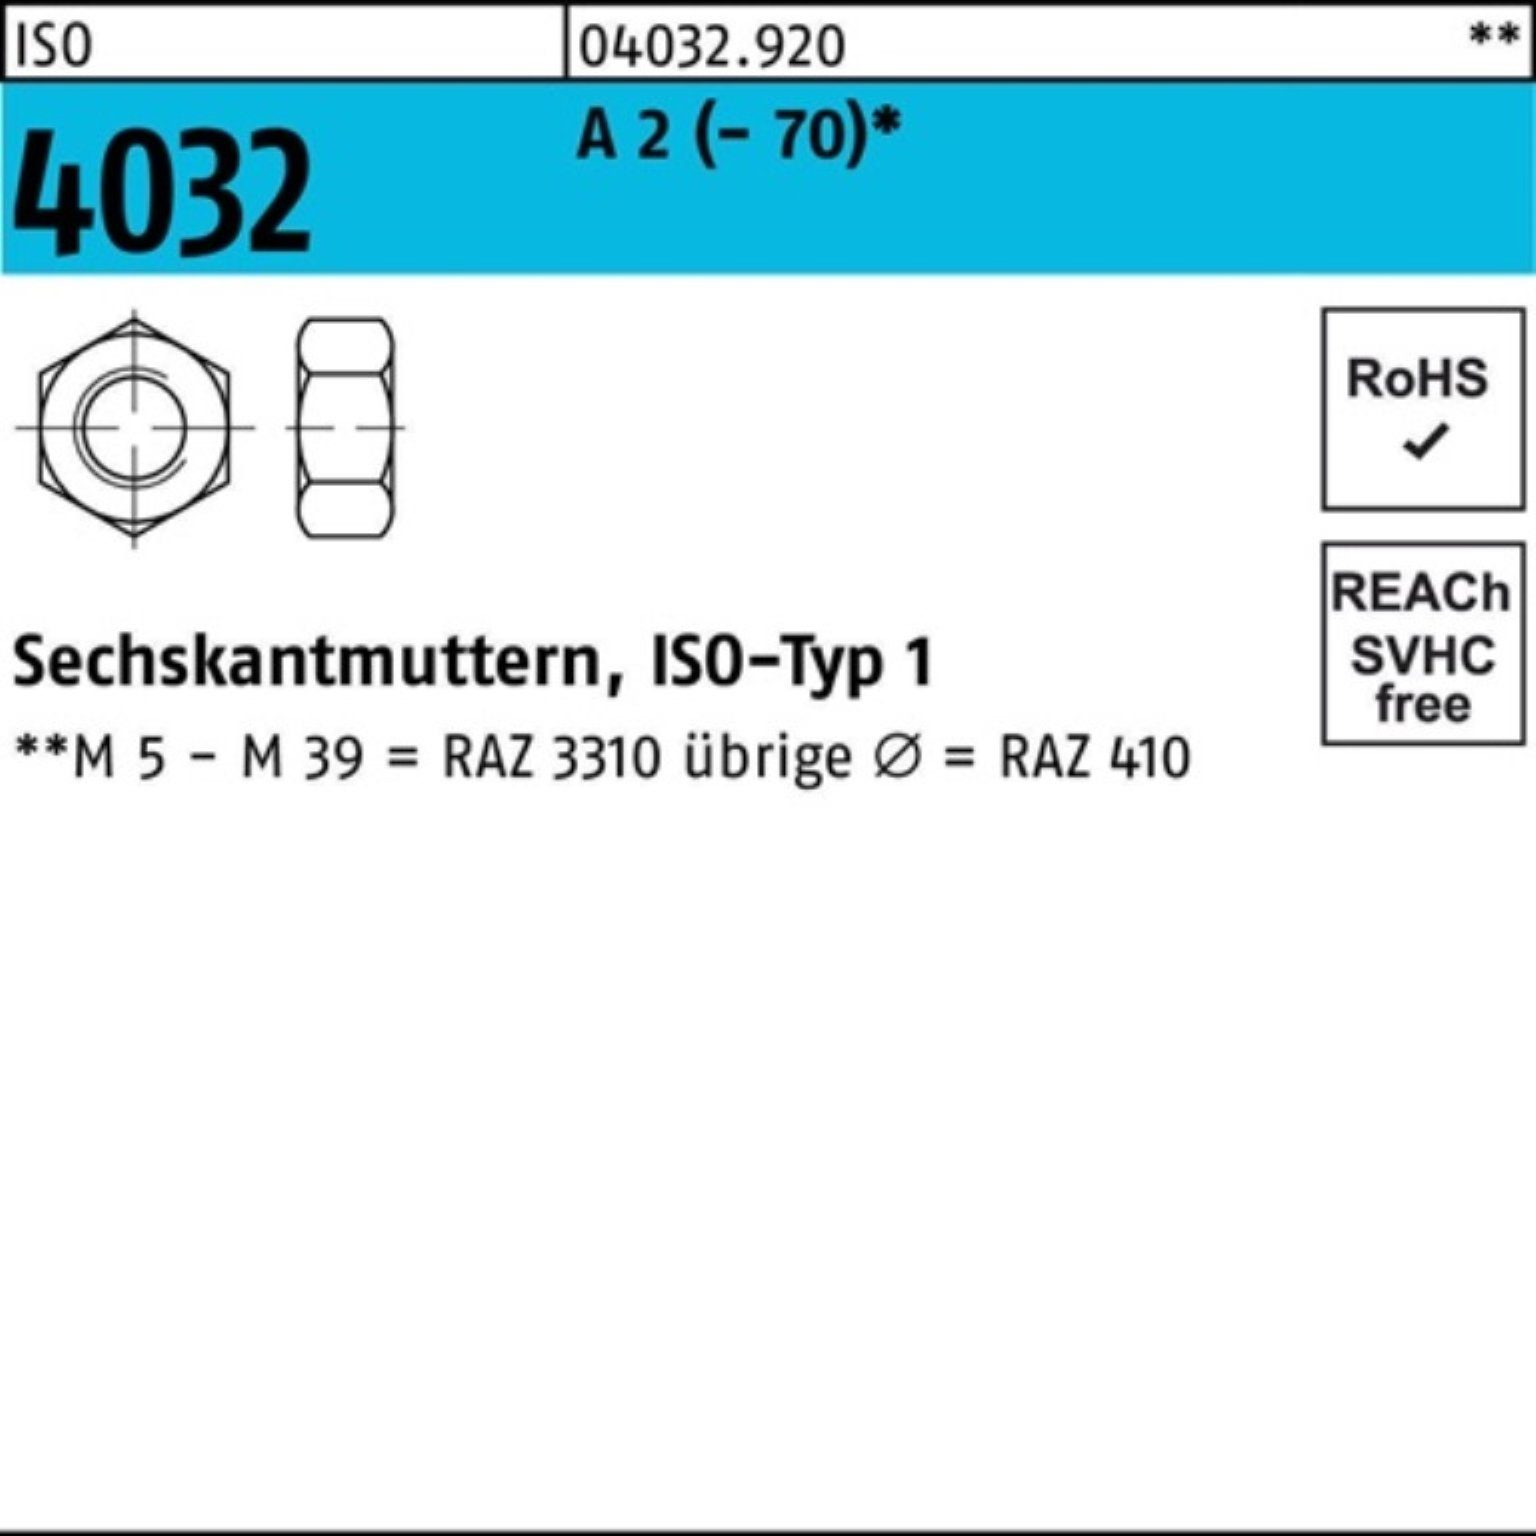 1000 2 A - Bufab Muttern A ISO Stück M3 2 4032 Pack Sechskantmutter ISO 4032 1000er